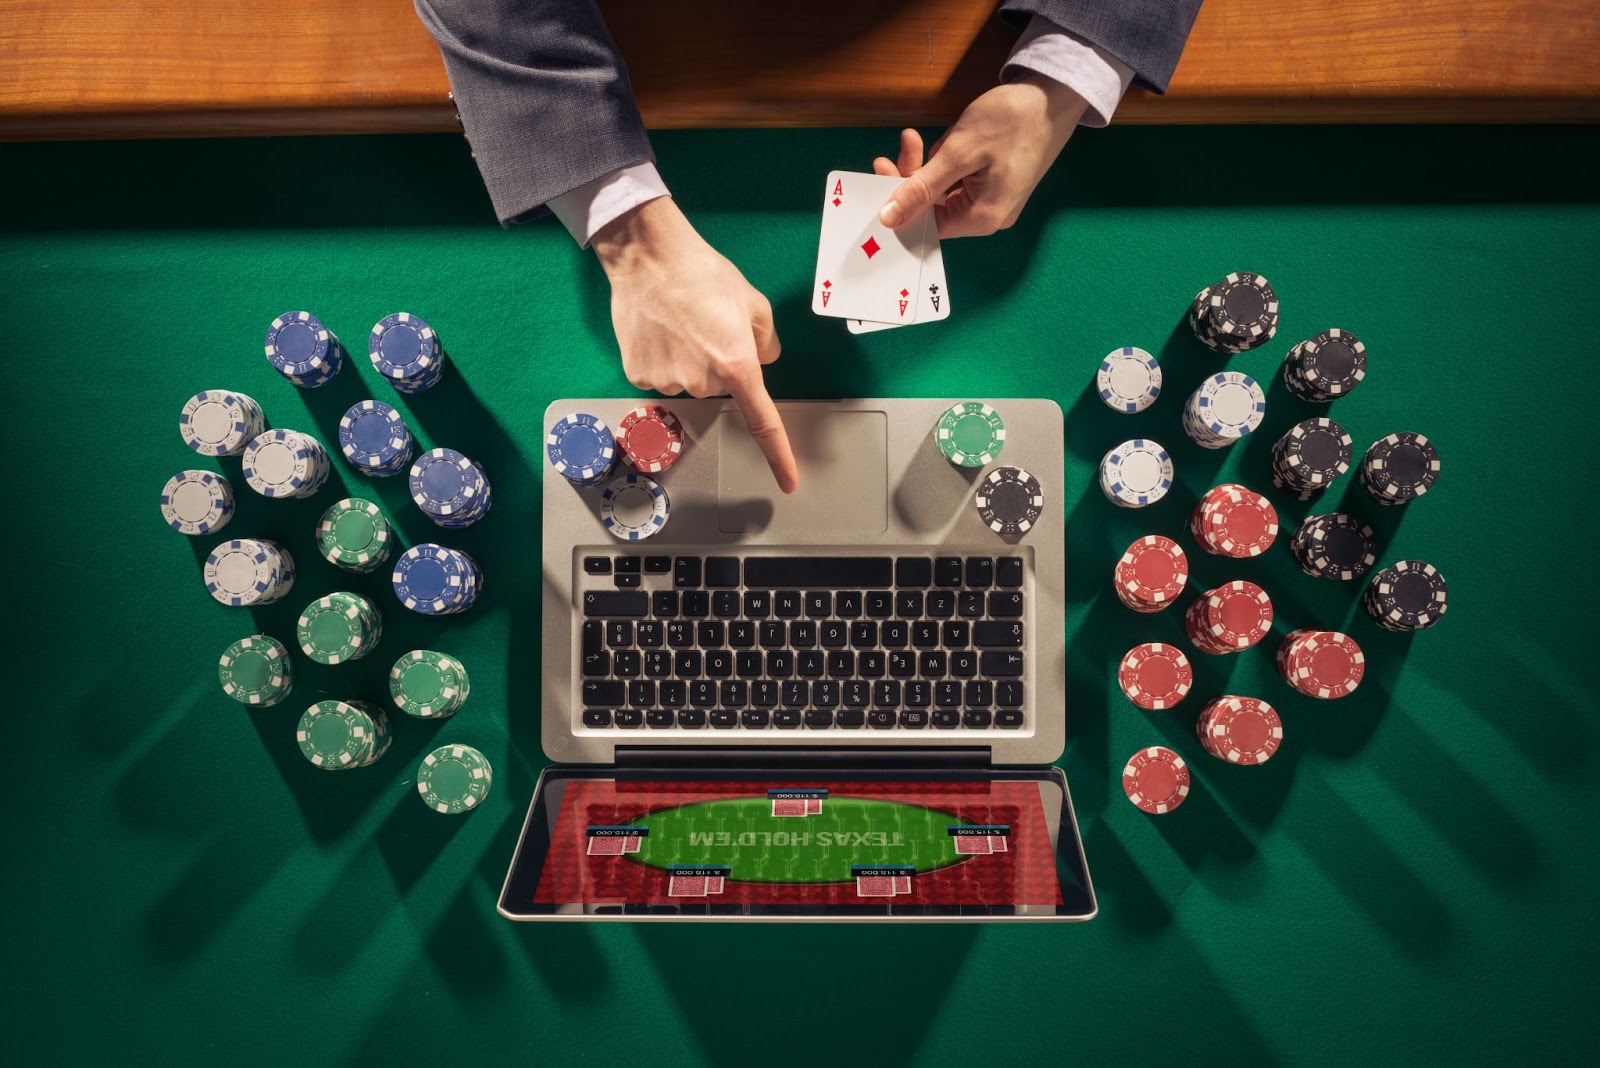 100 leçons apprises des pros sur casino